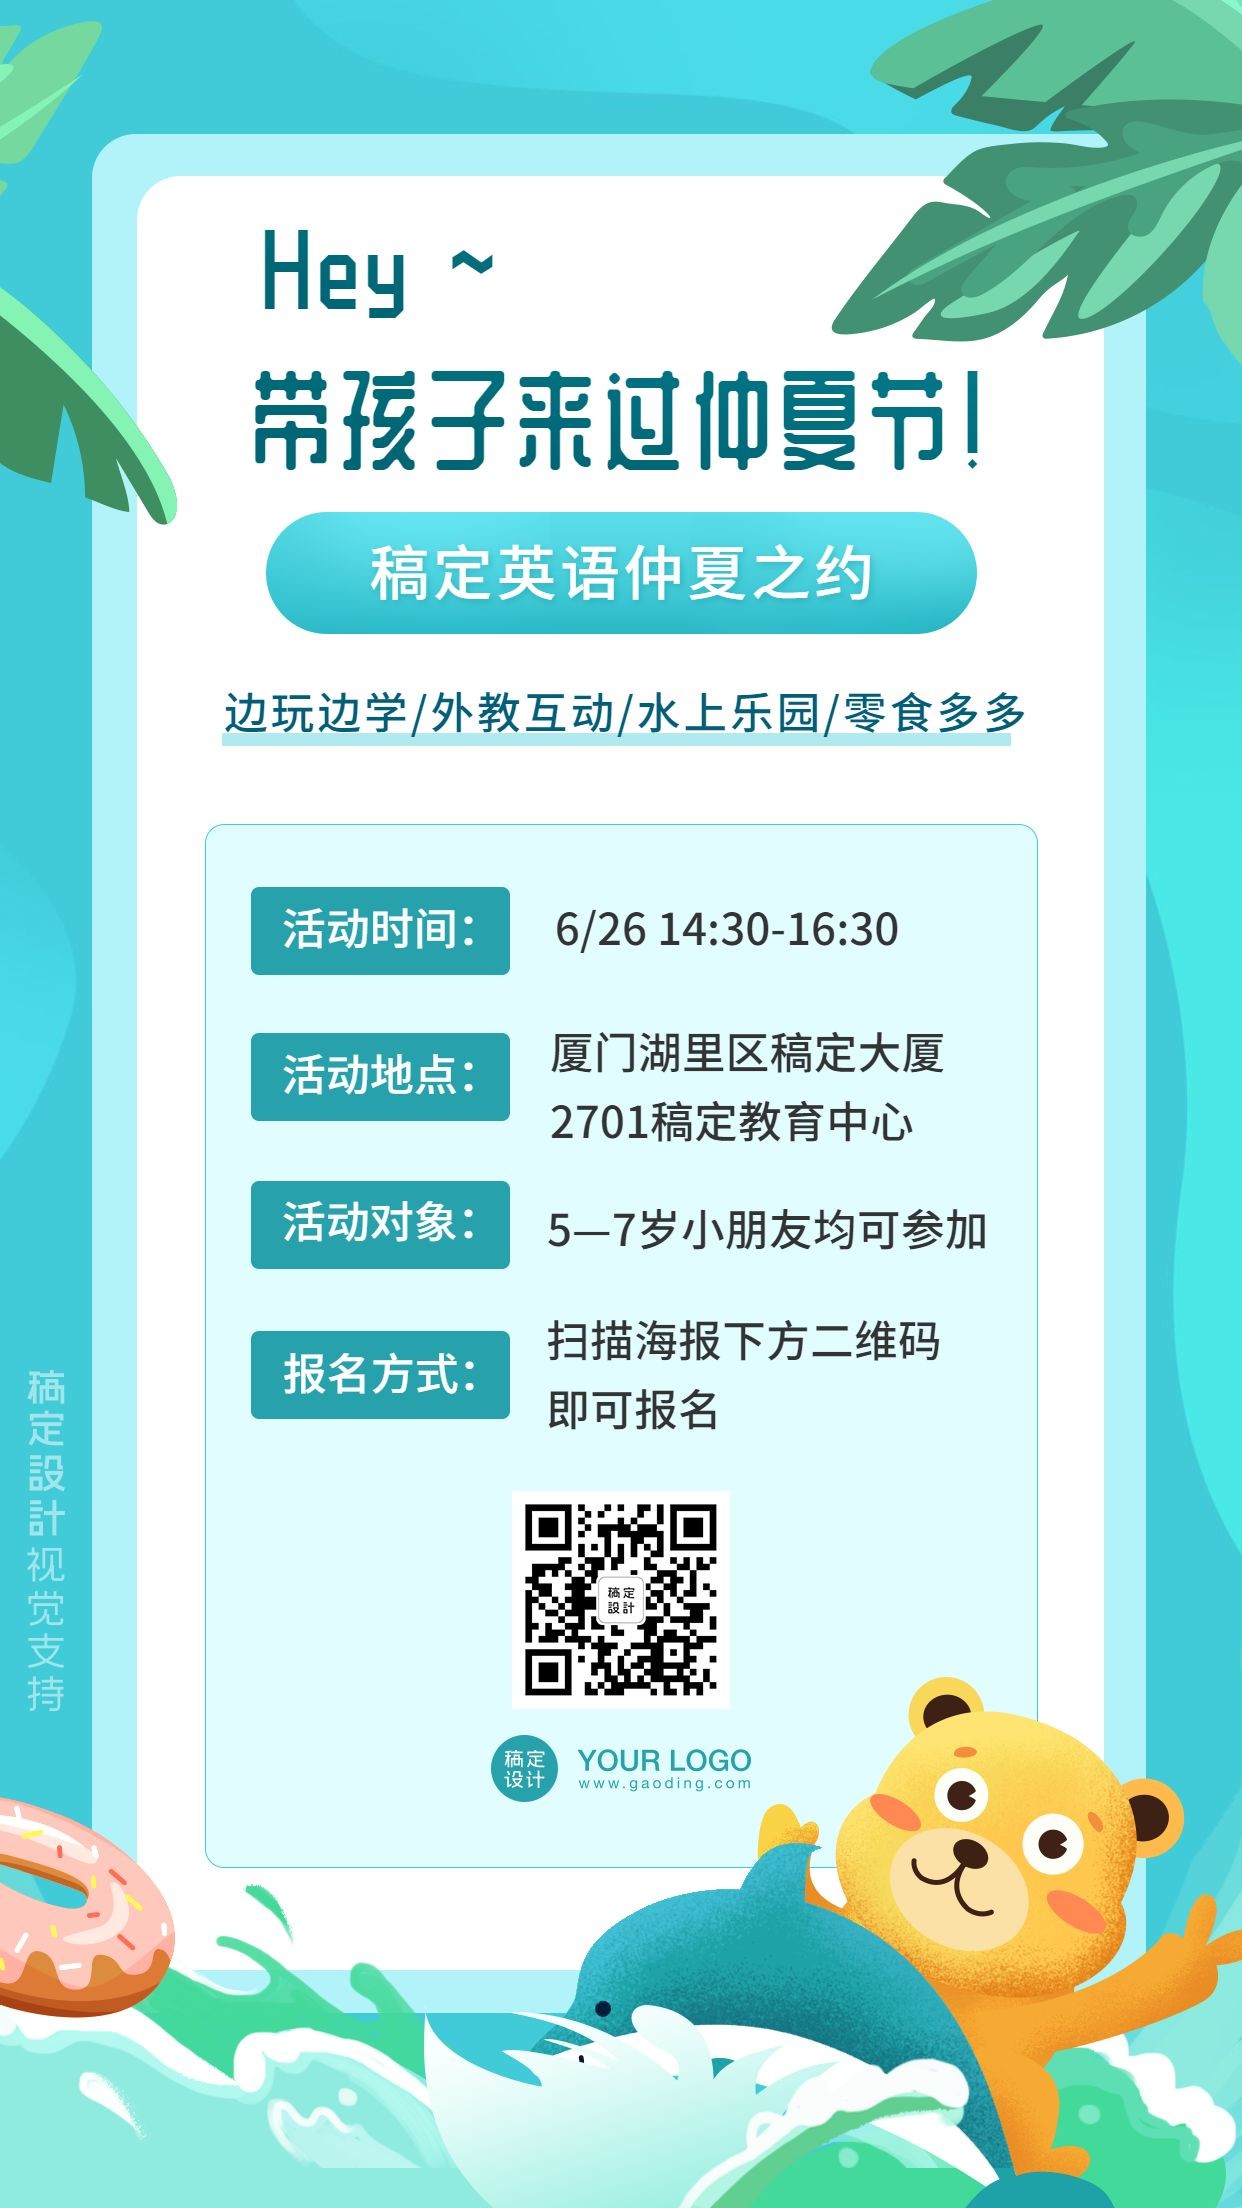 仲夏节英语教育活动宣传手机海报